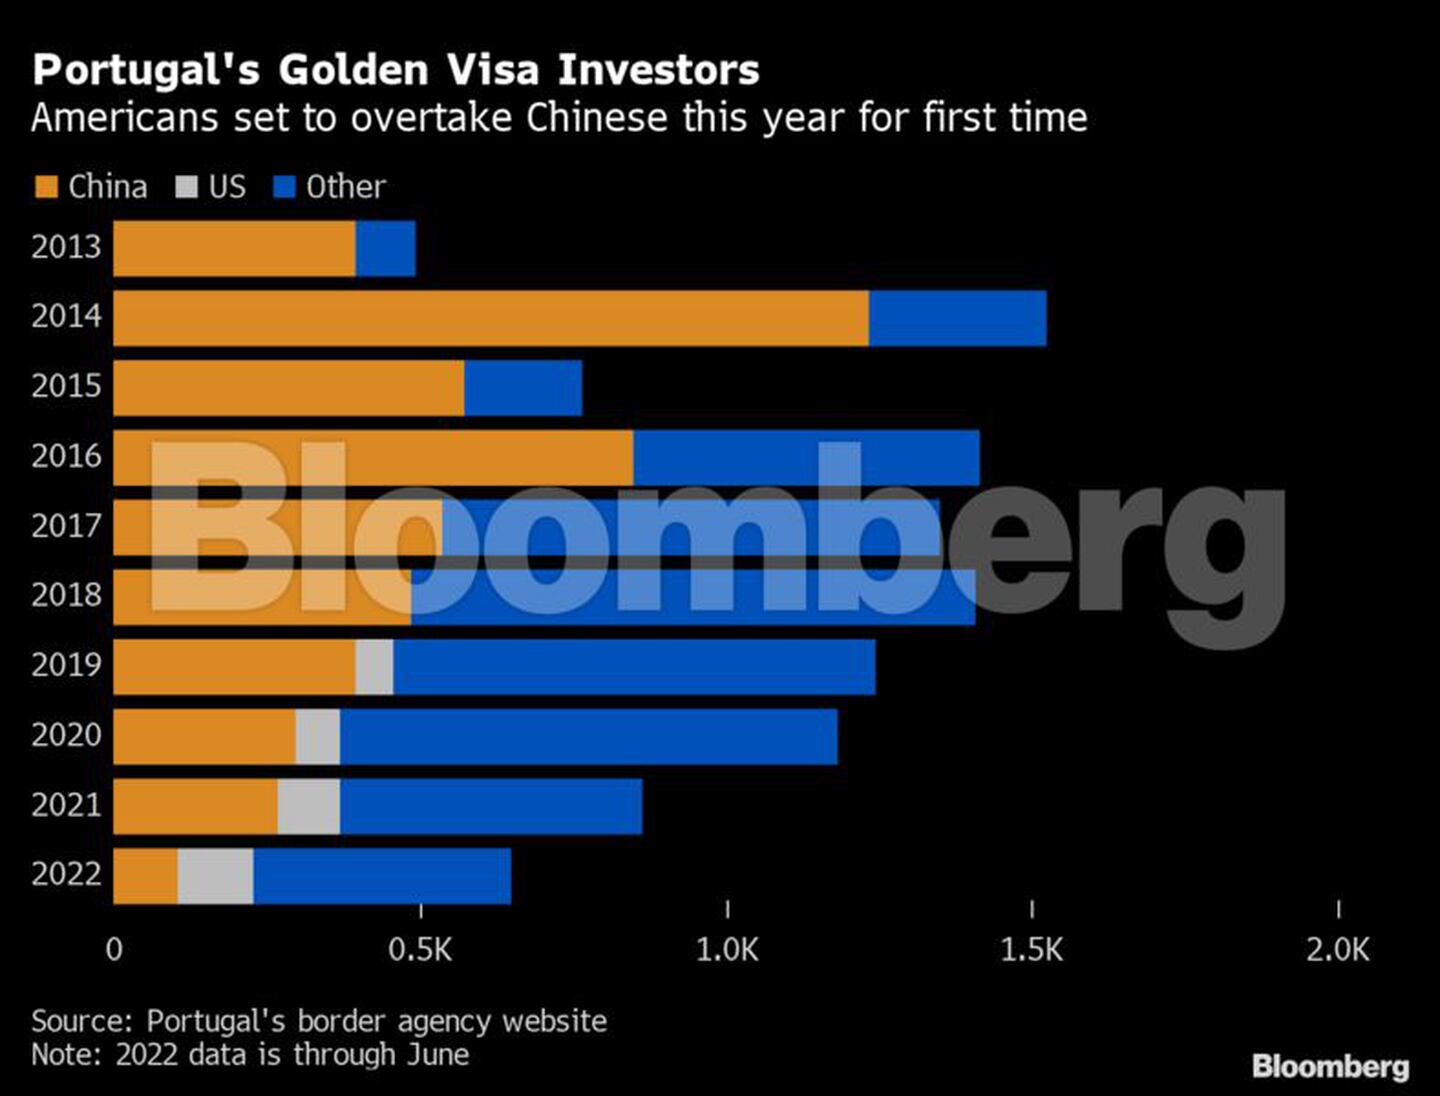 Inversionistas en la visa dorada de Portugaldfd